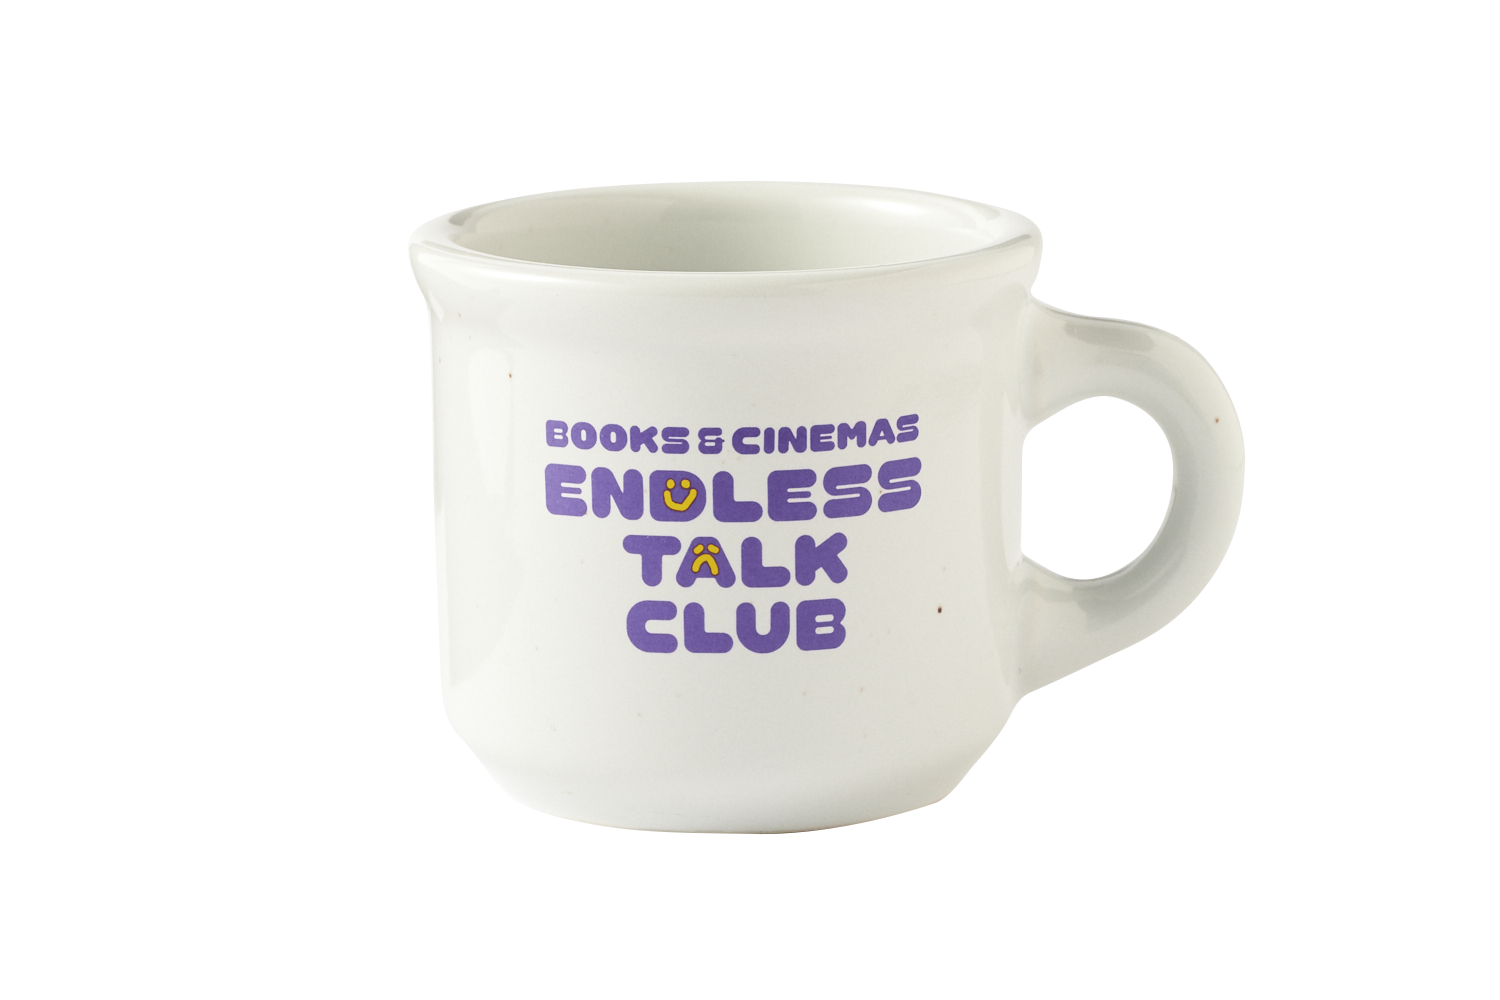 ENDLESS TALK CLUB COFFEE MUG